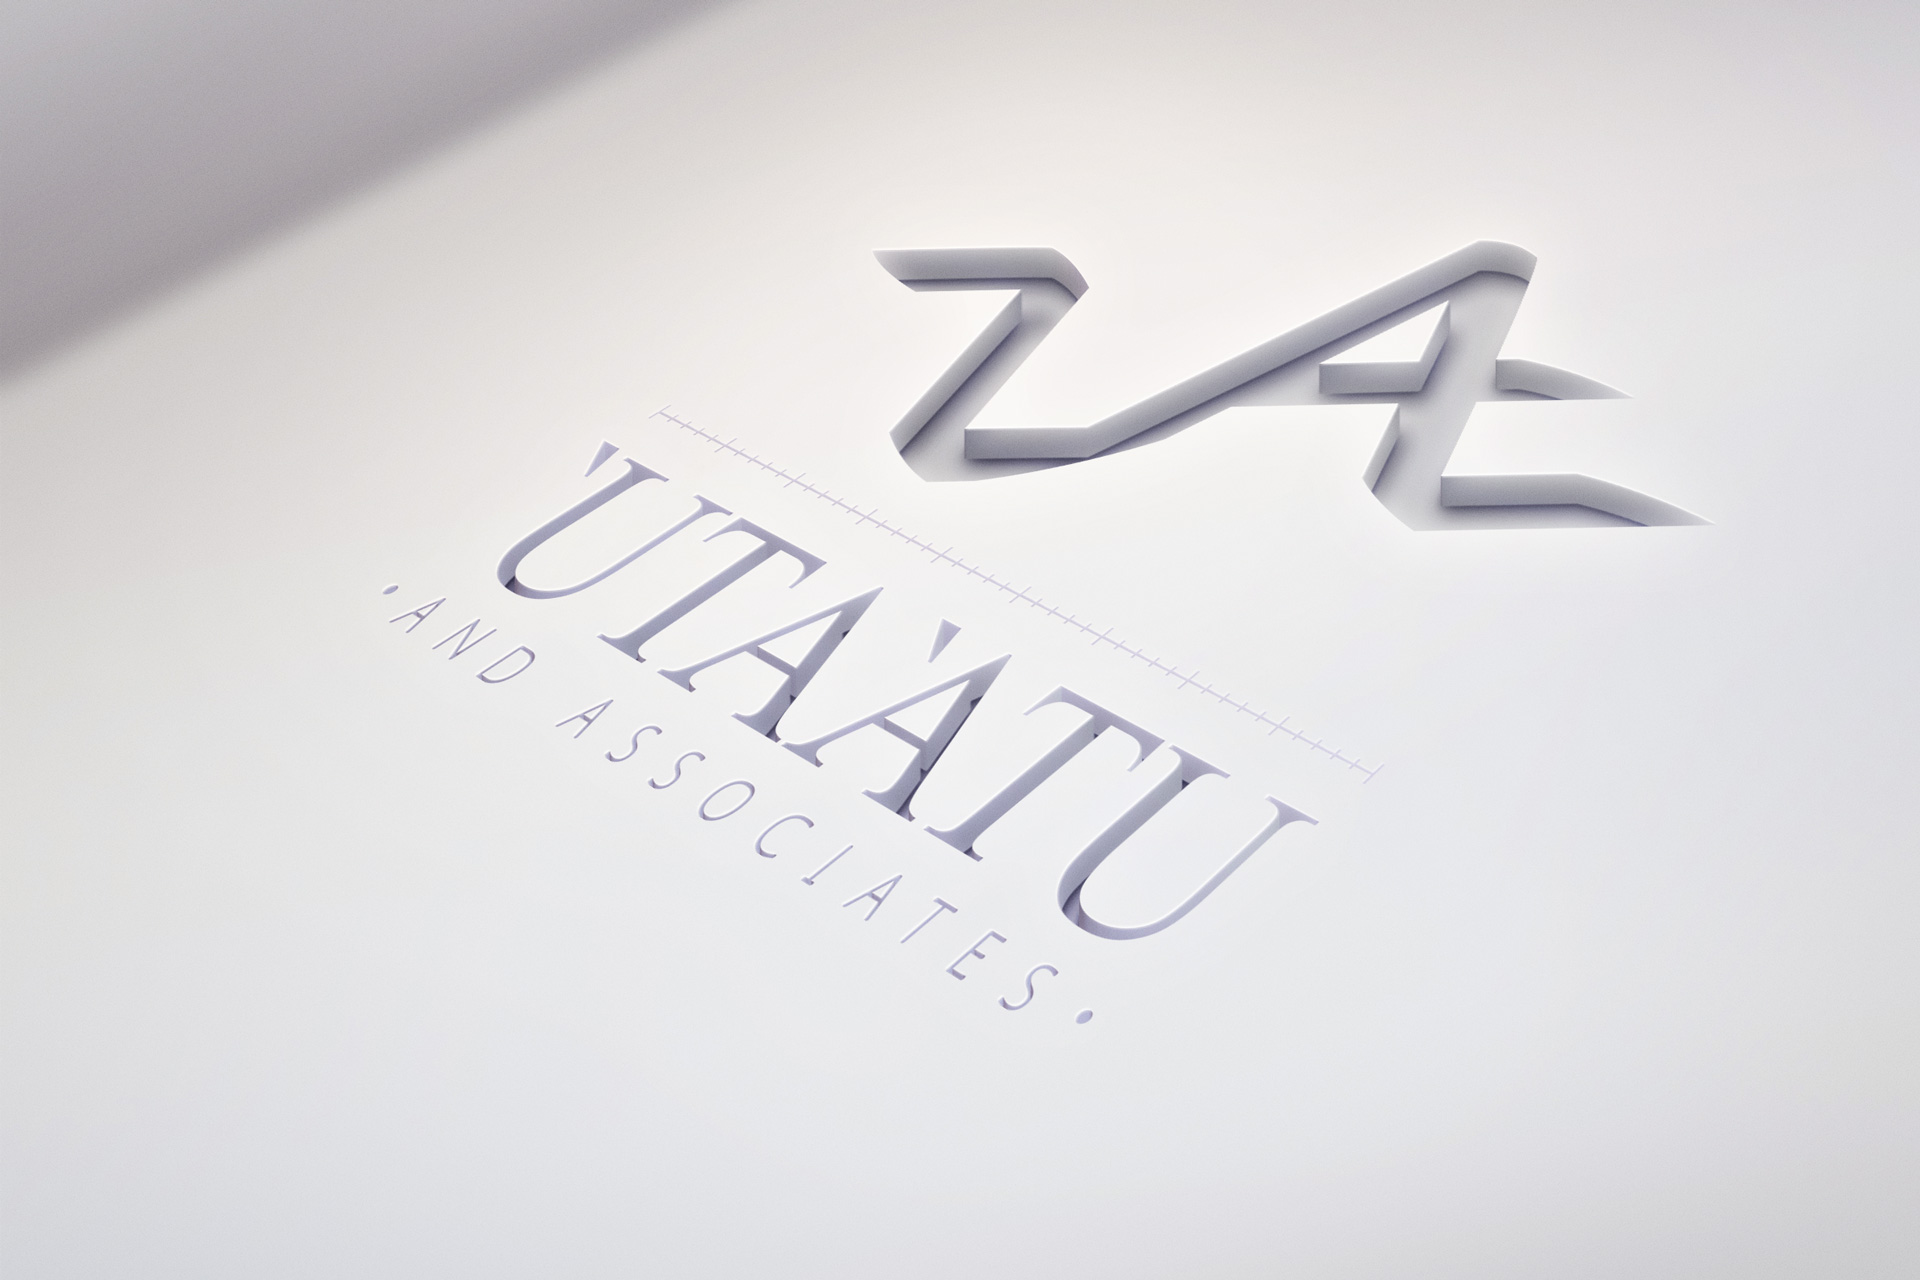 'Uta'Atu Signage Design